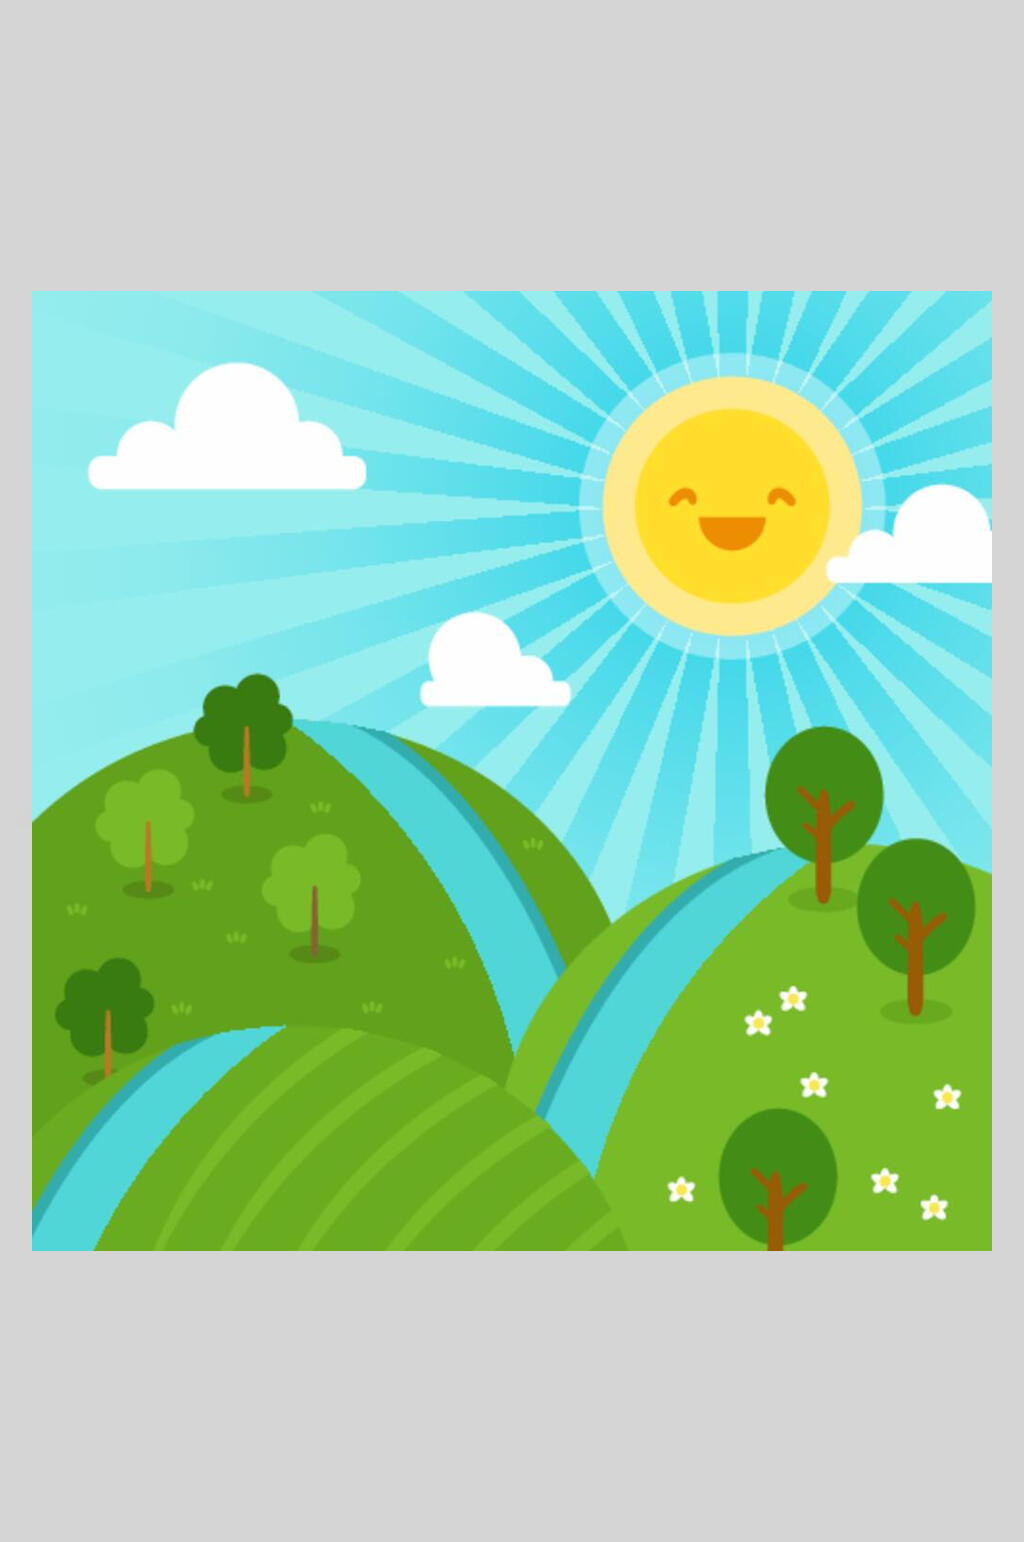 绿色山坡树木草地花朵太阳风景插画